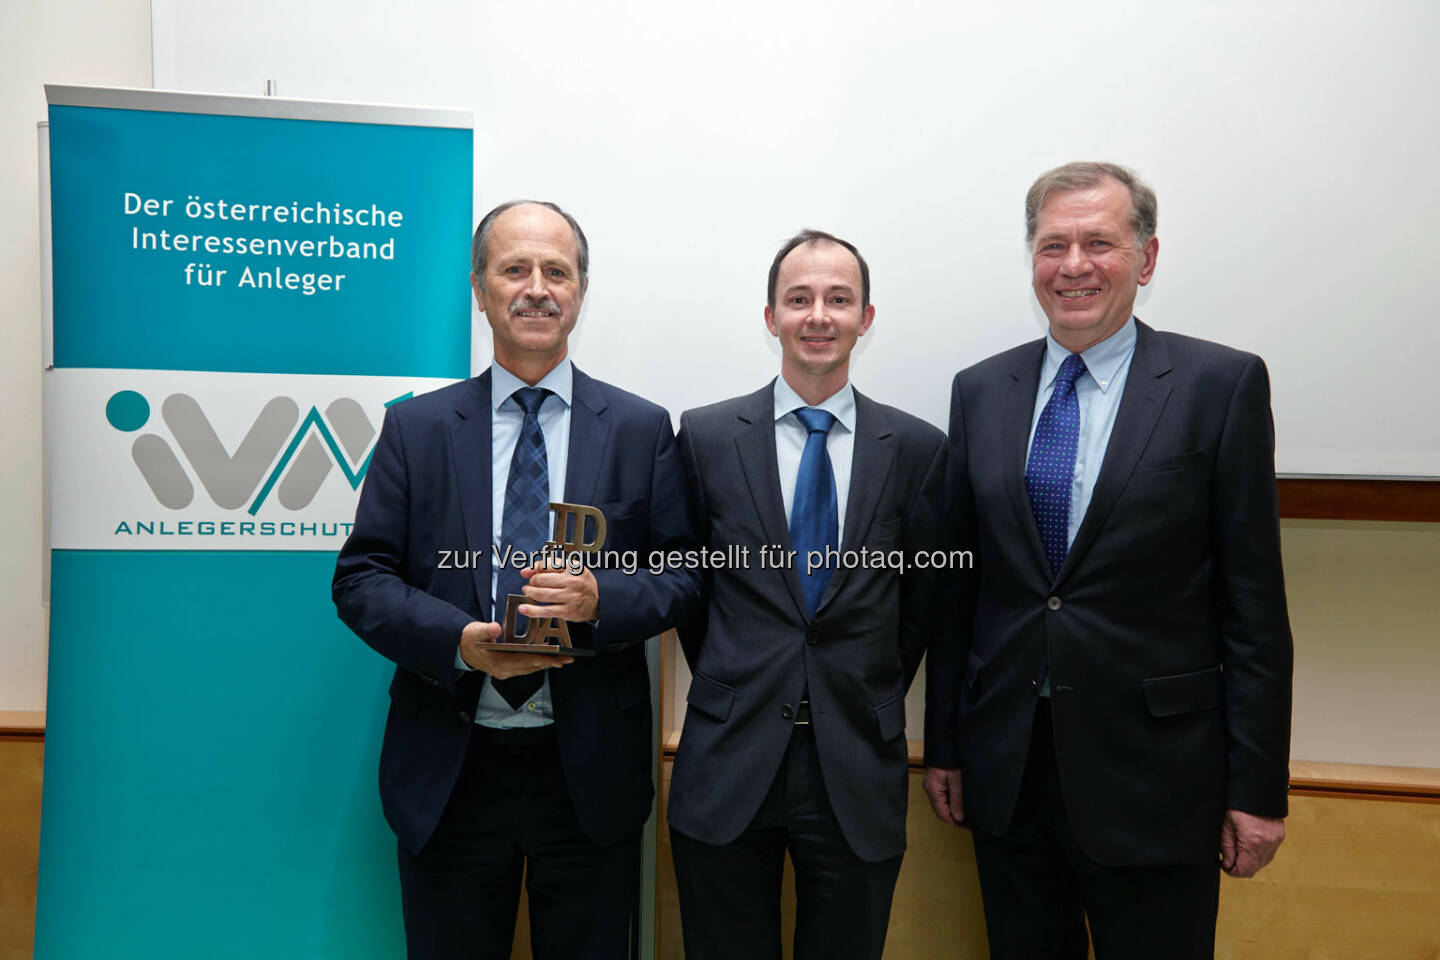 Der IVA-David 2013 ging an die voestalpine AG - entgegengenommen von Hubert Possegger und Gerald Resch. Mit dieser Auszeichnung, die einmal jährlich an Unternehmen und Persönlichkeiten verliehen wird, werden wesentliche Beiträge zur Förderung der Kapitalmarktkultur und aktionärsfreundliches Engagement gewürdigt. 